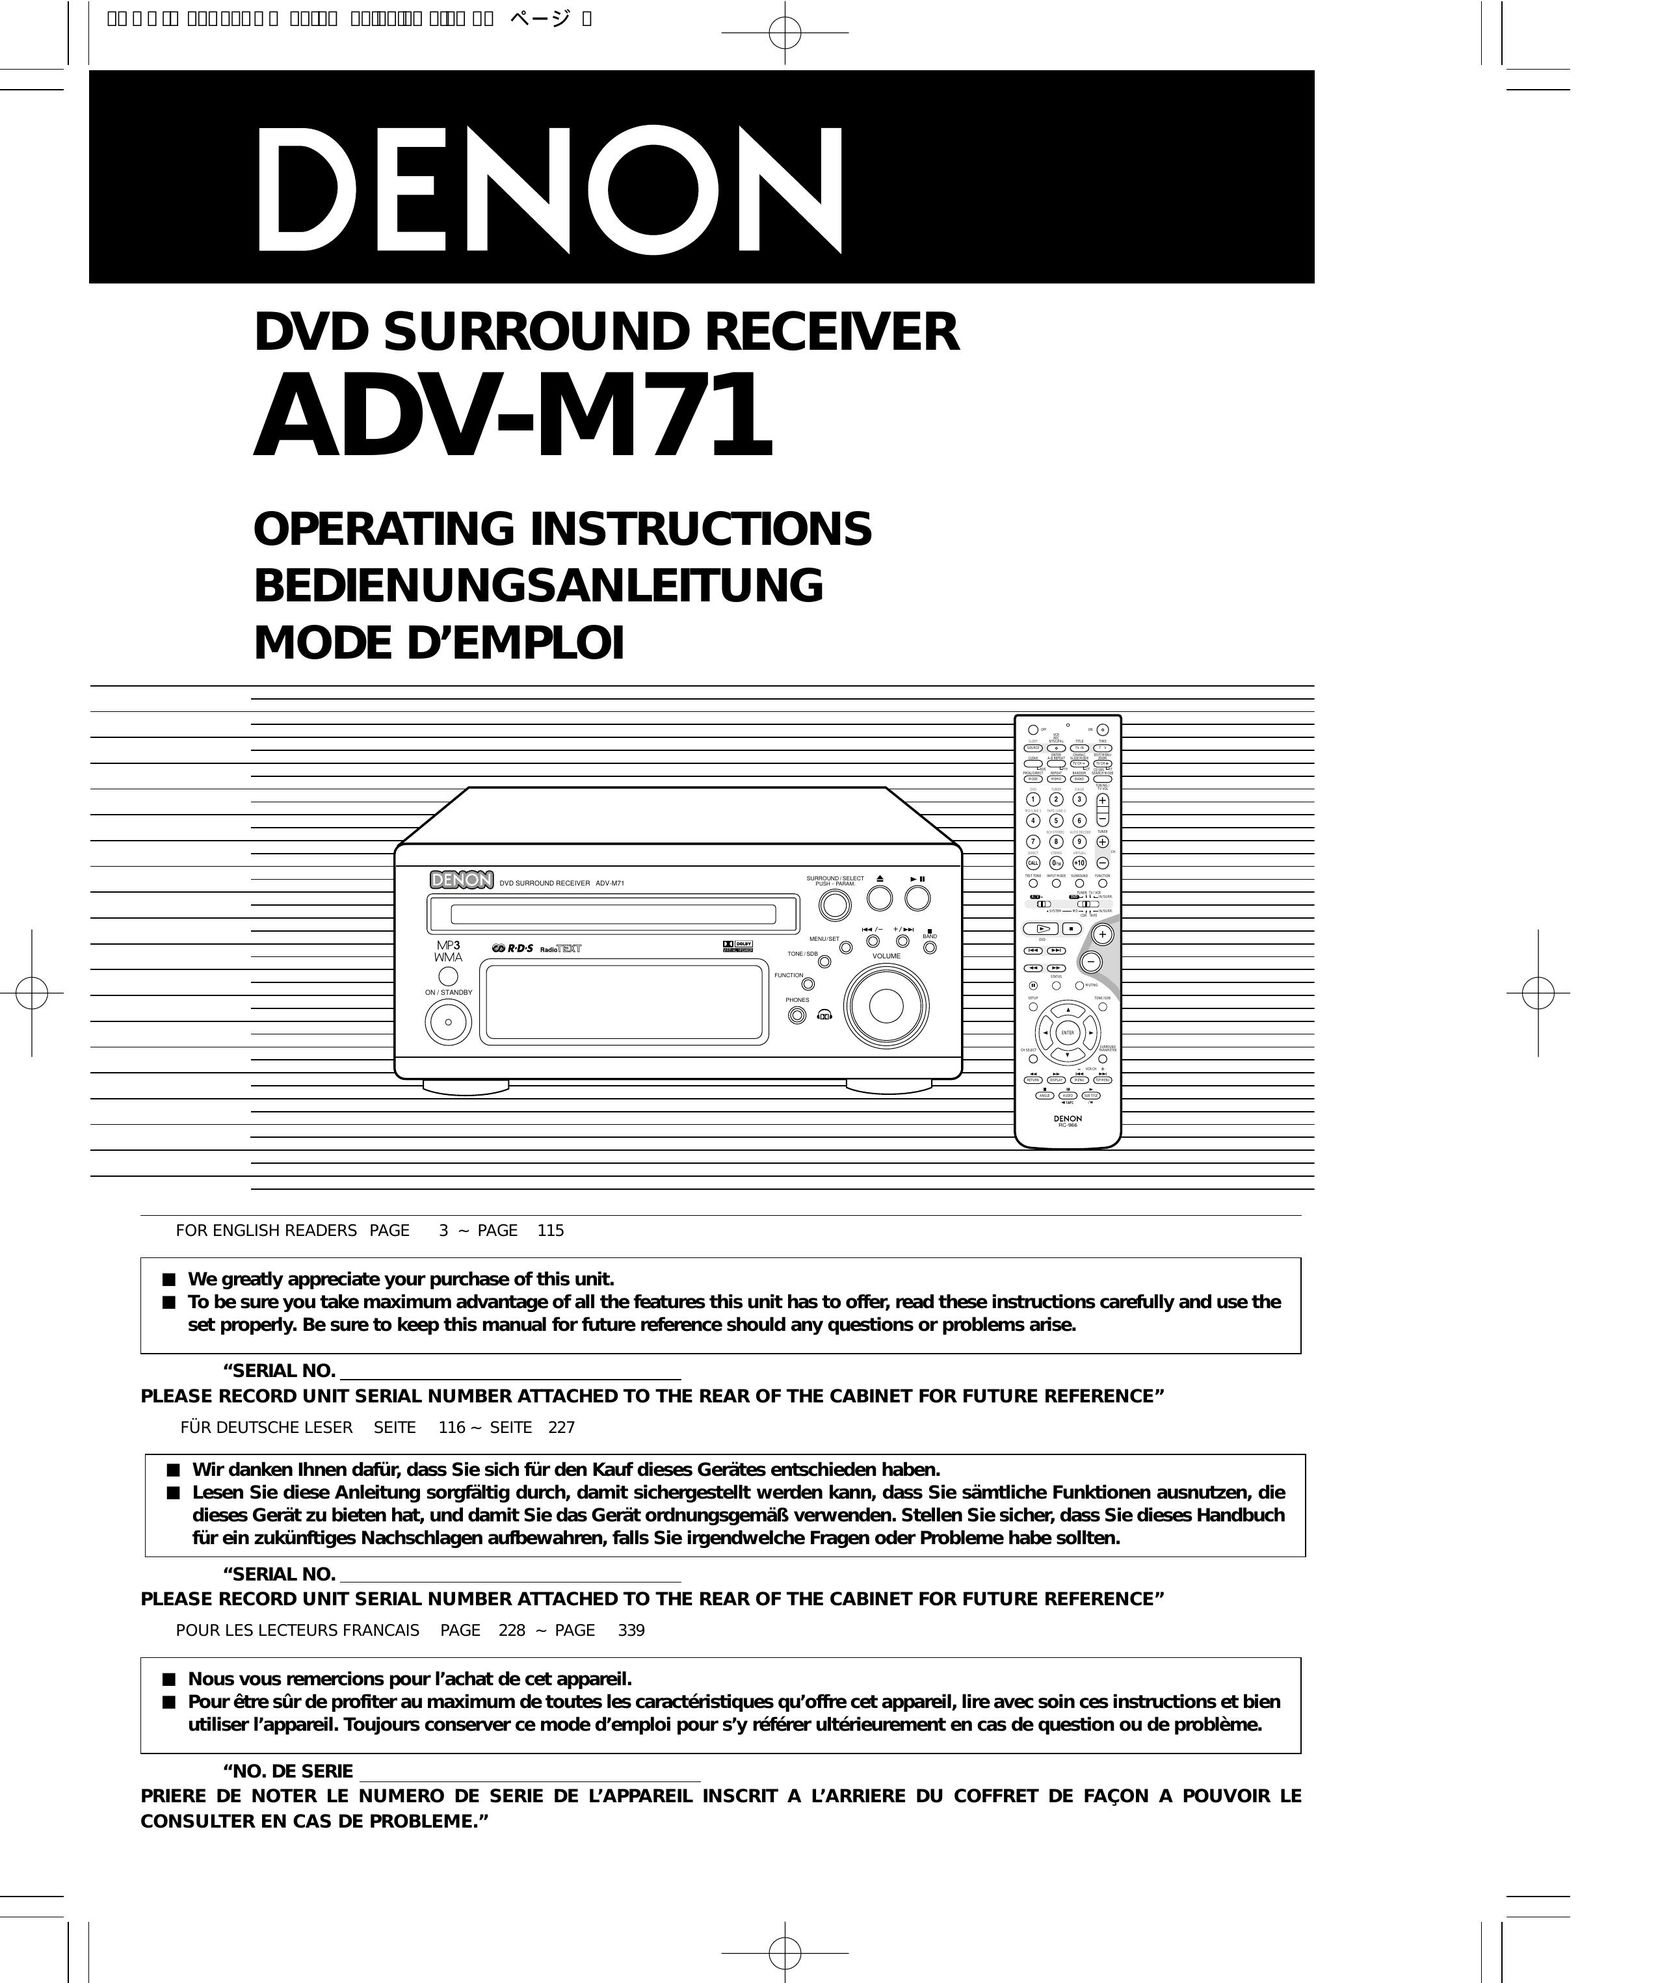 Denon ADV-M71 Home Theater System User Manual